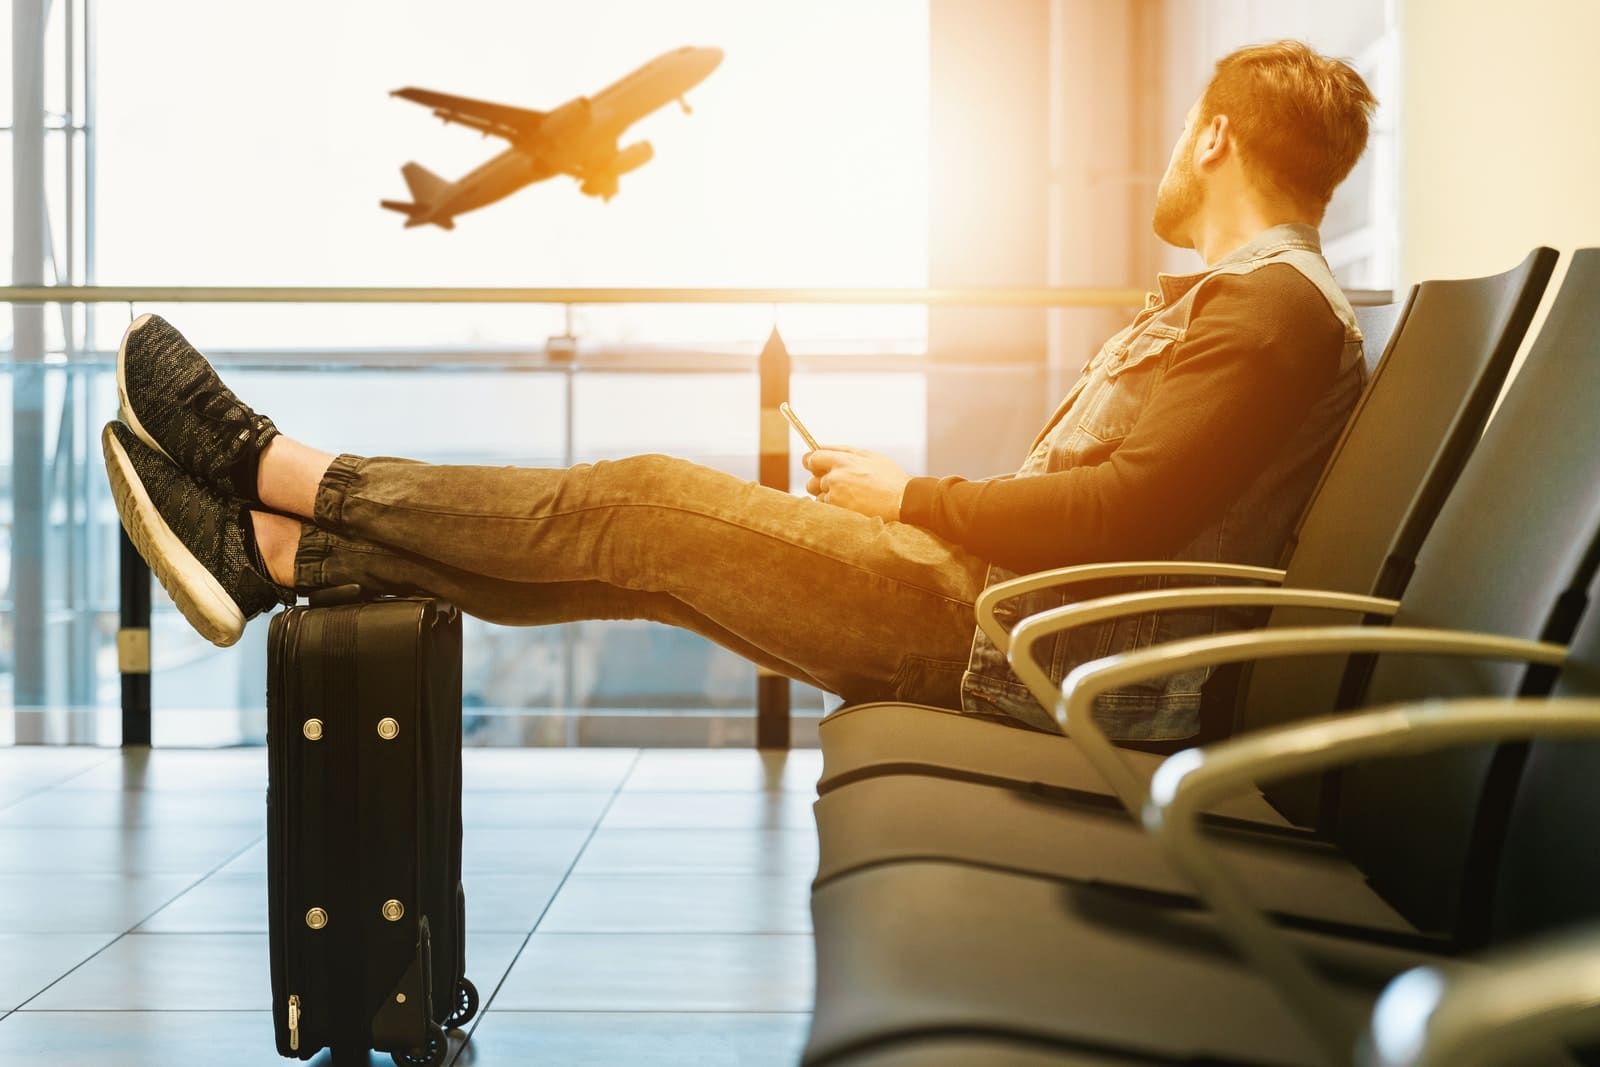 Người đàn ông ngồi trên ghế băng đảng với đôi chân trên hành lý nhìn vào máy bay